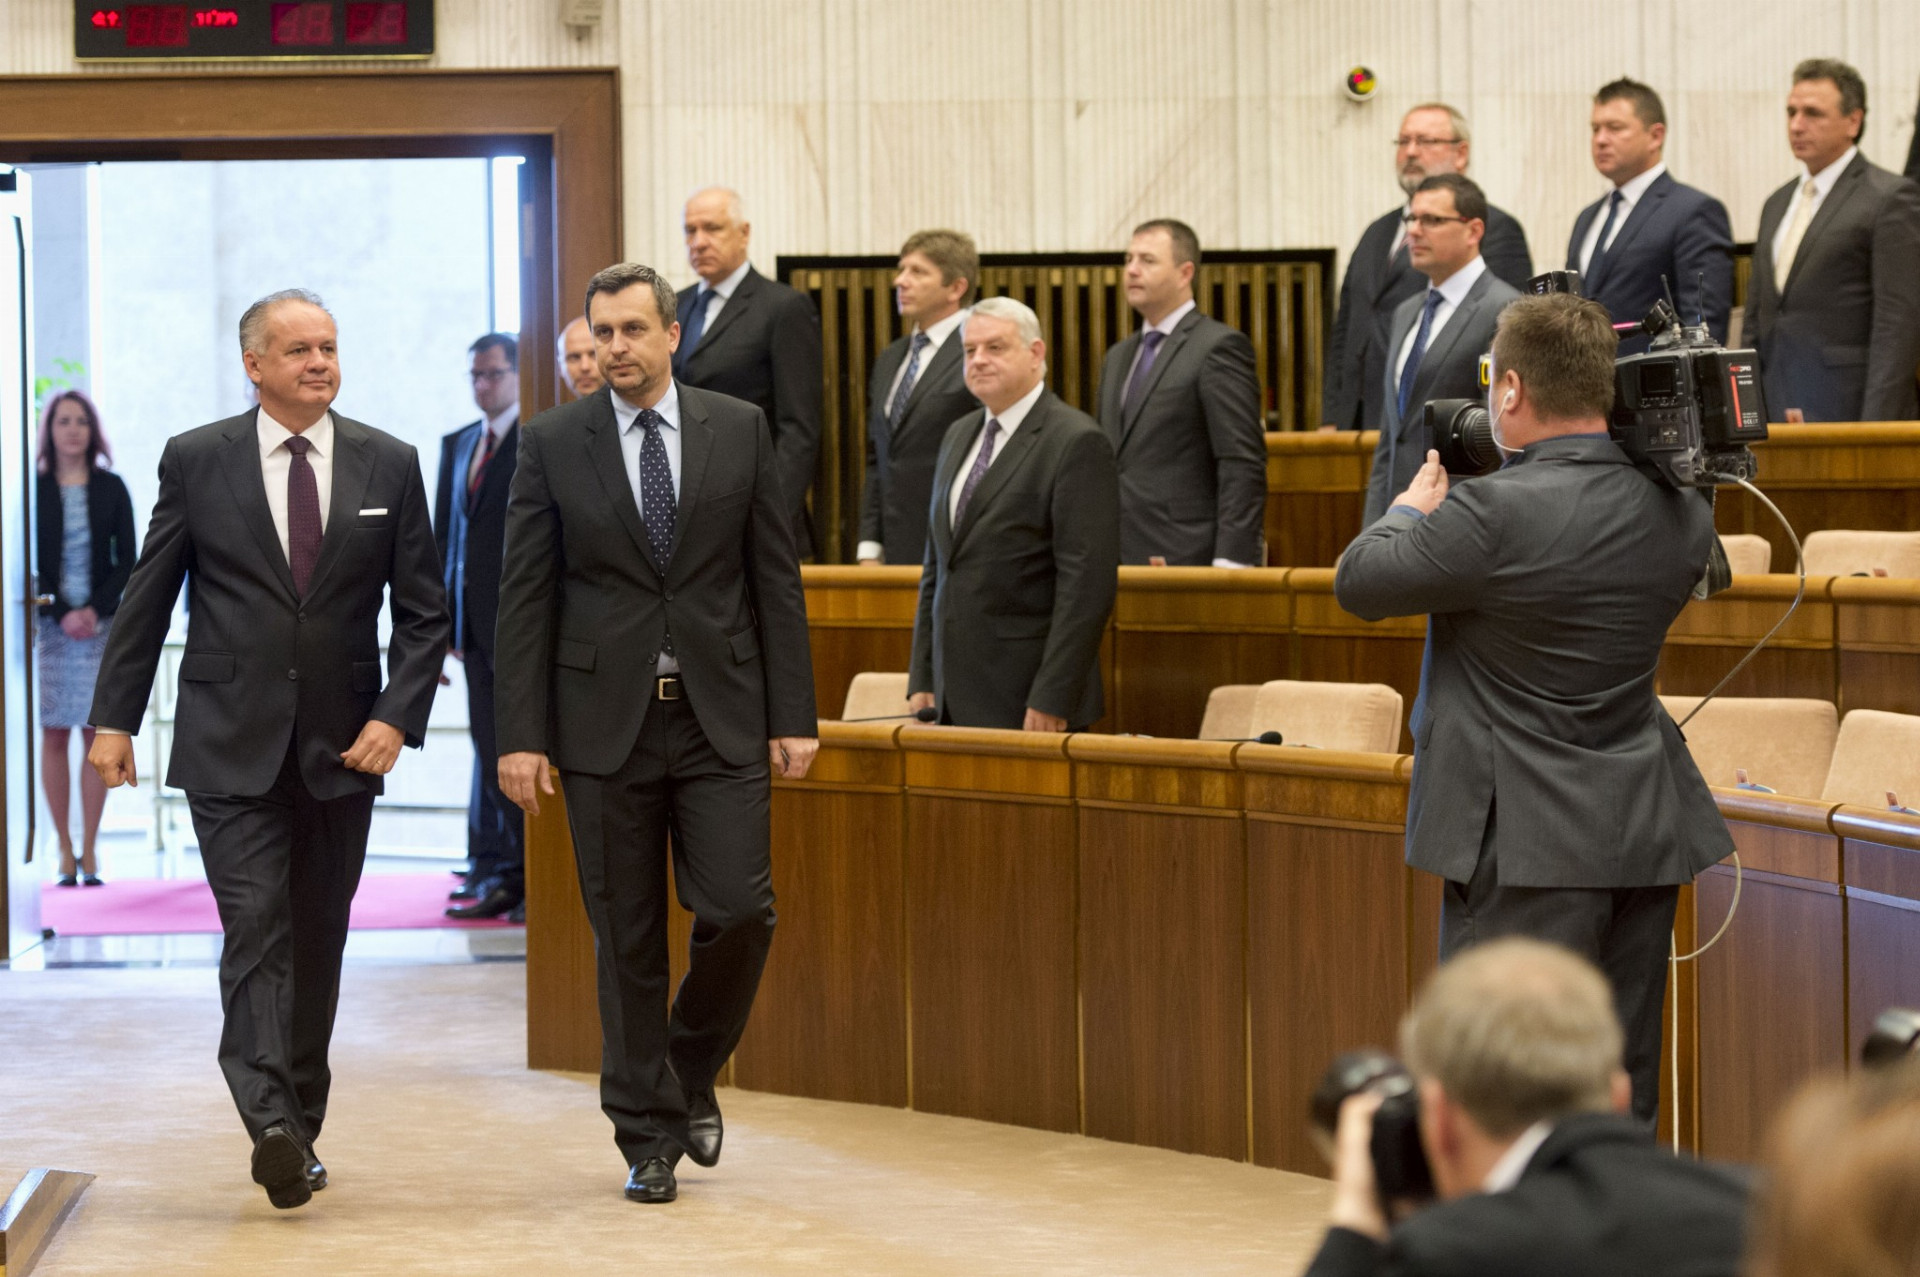 Andrej Kiska predniesol vo štvrtok v parlamente už druhú správu o stave republiky.